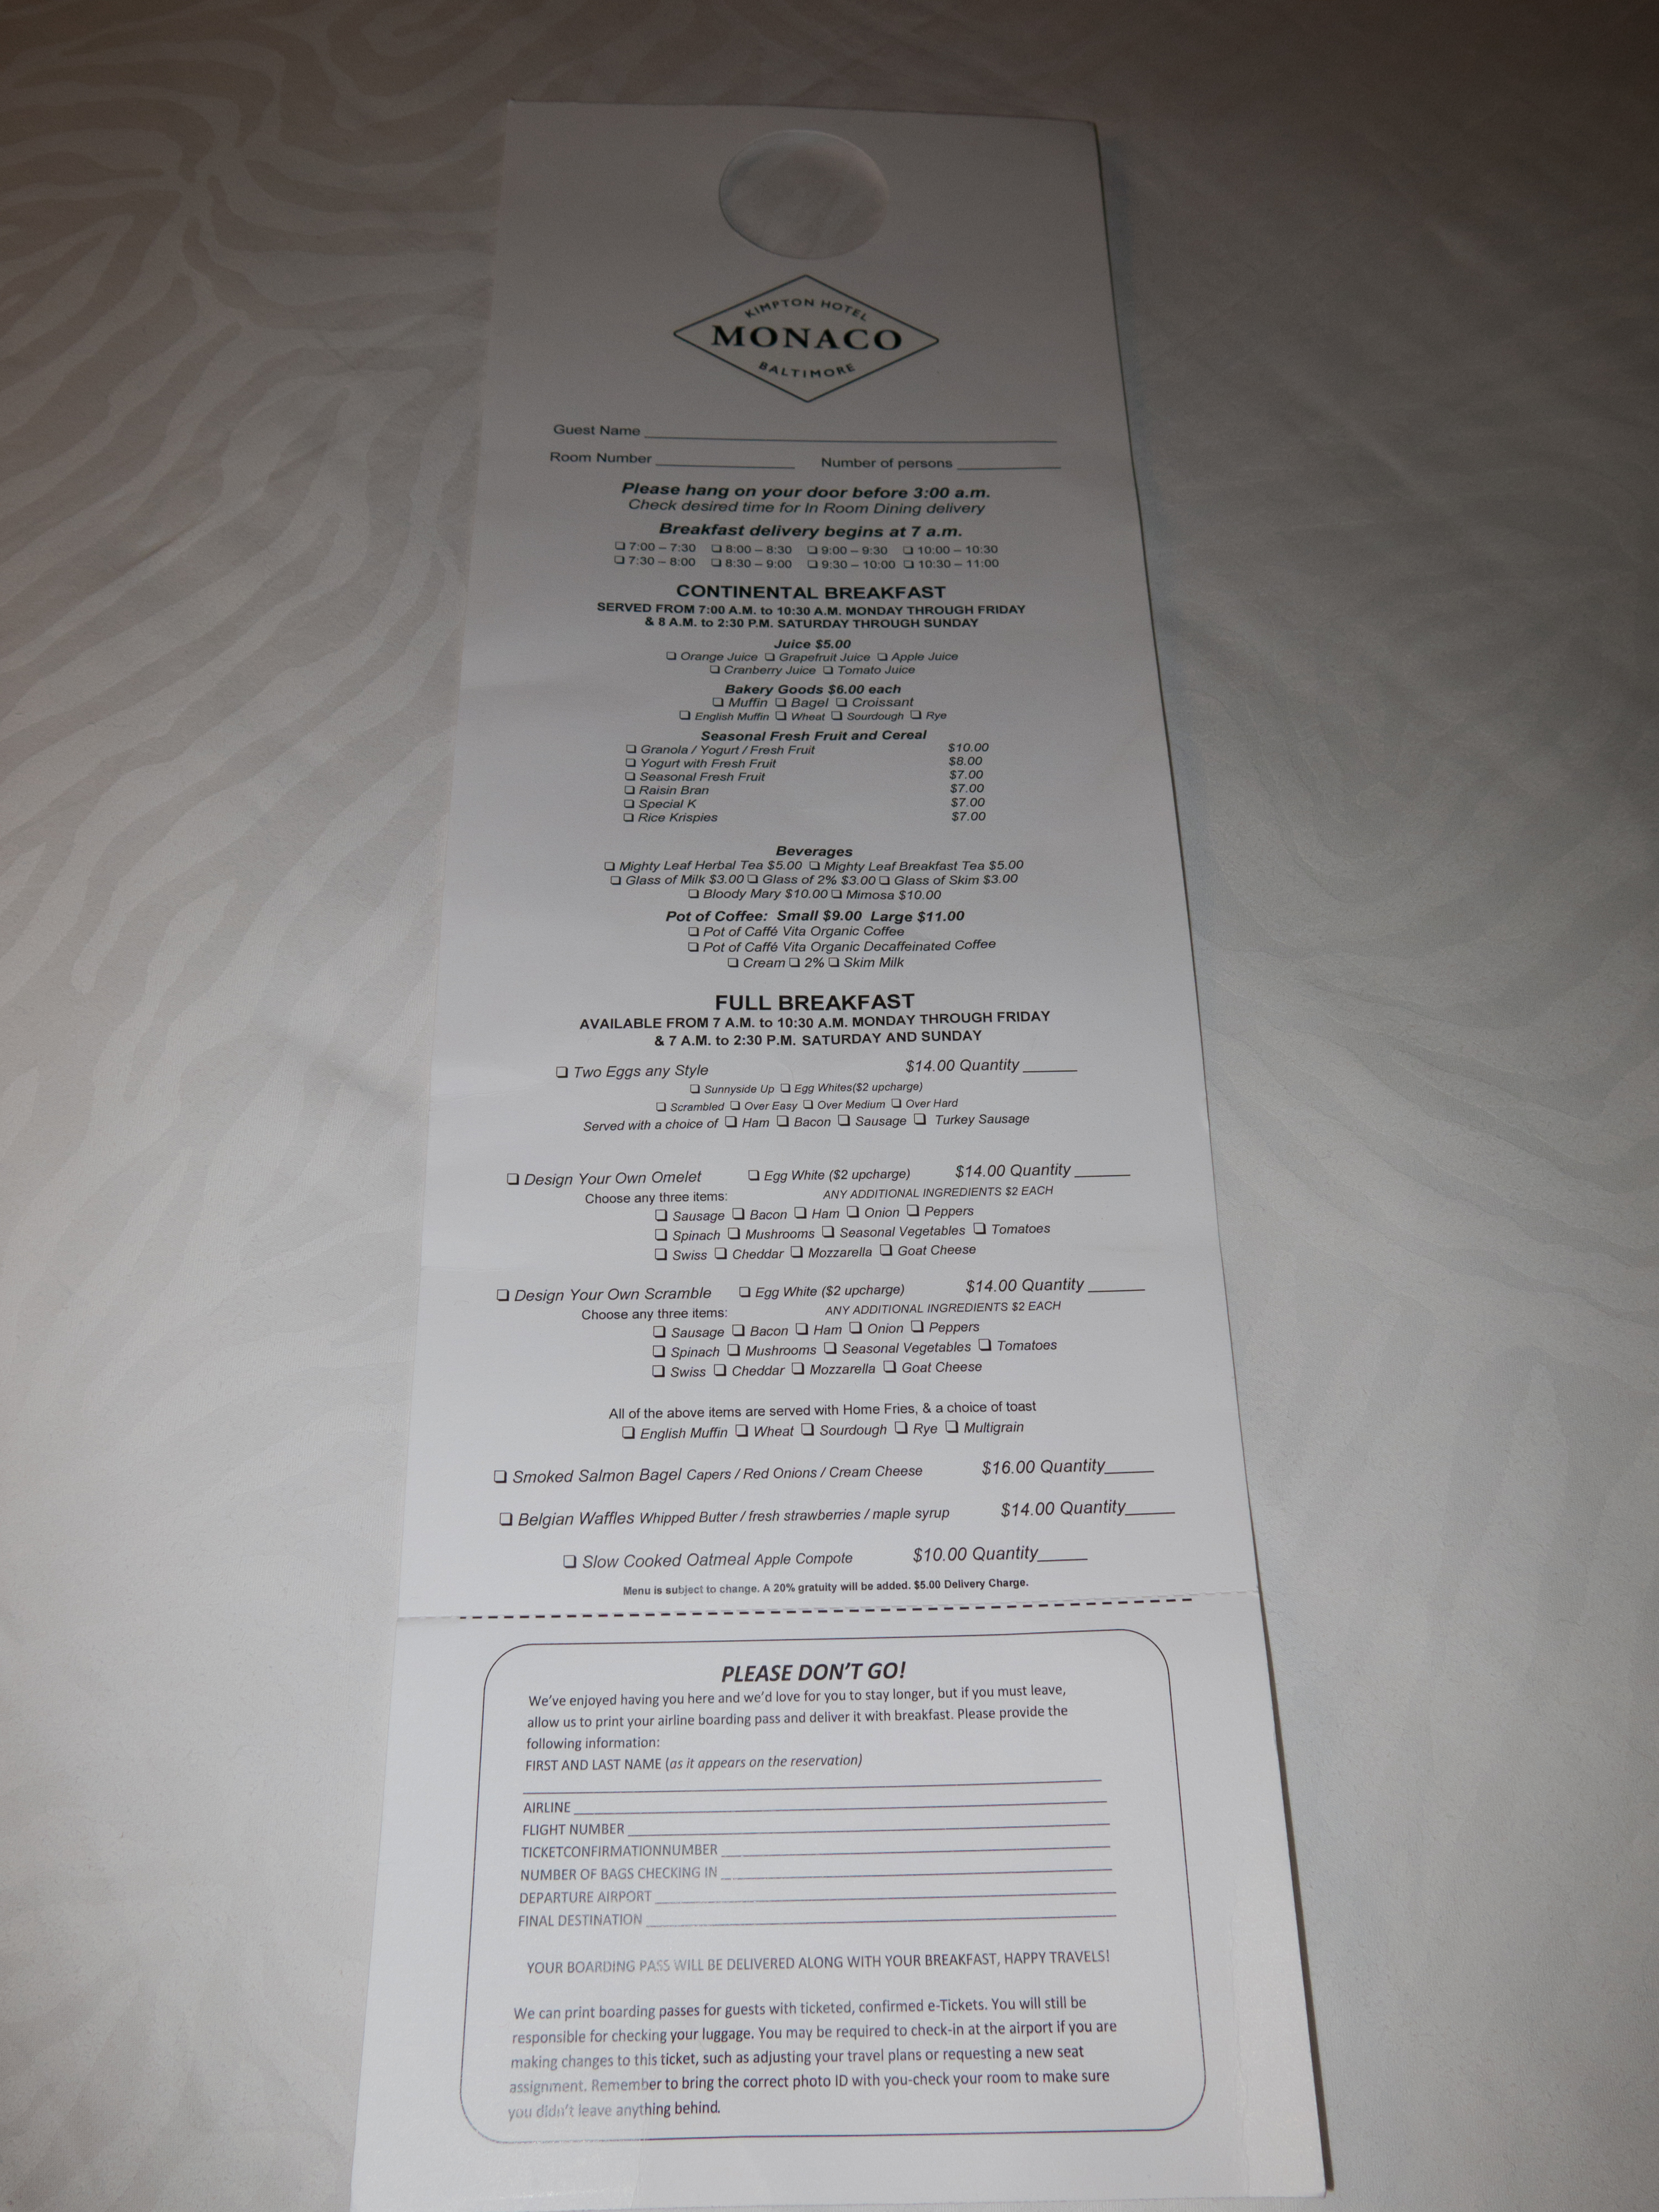 Breakfast room service menu at Hotel Monaco